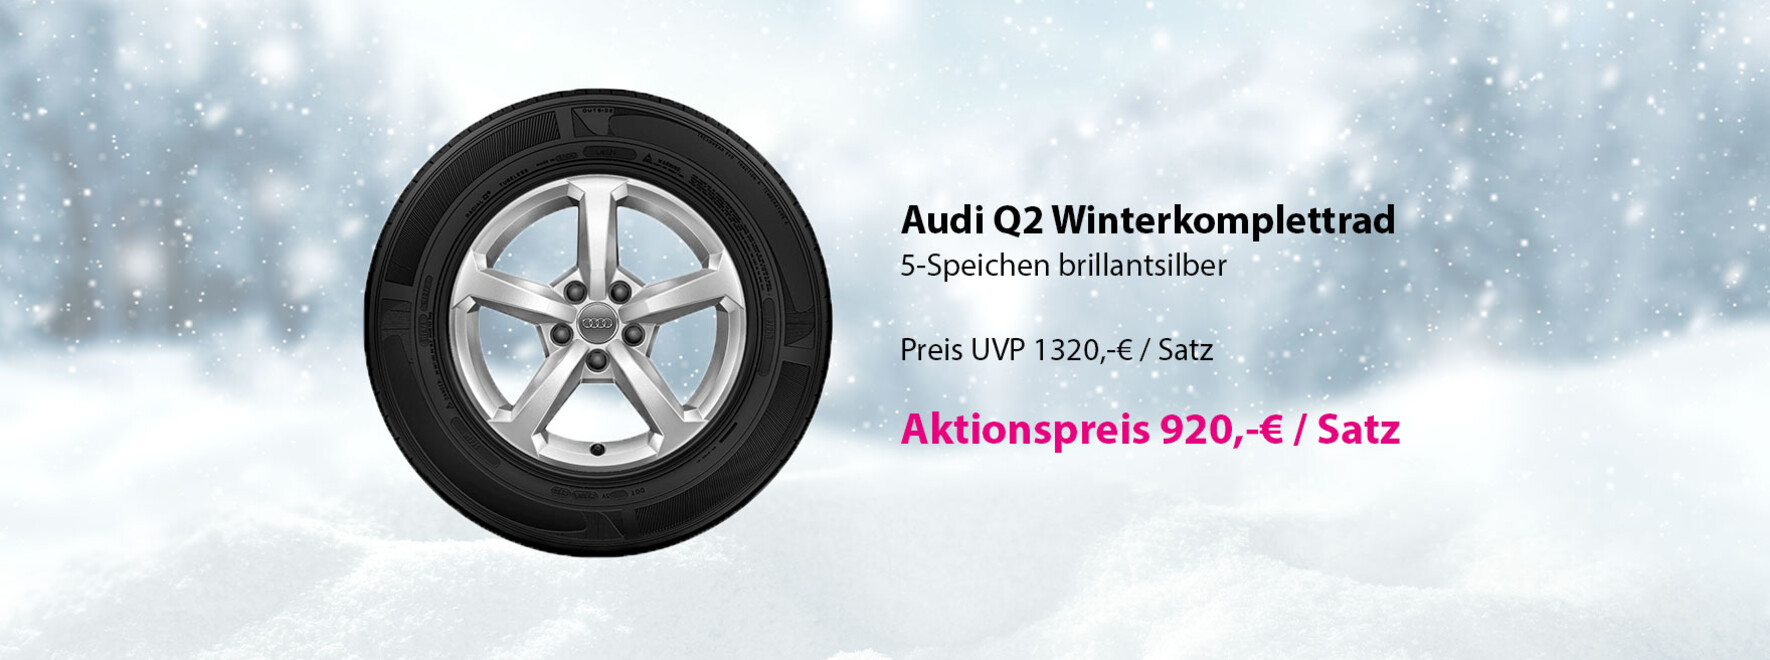 Audi Q2 Winterkomplettrad Aktion | Mit dem Winterkomplettrad kommen Sie komfortabel an Ihr Ziel